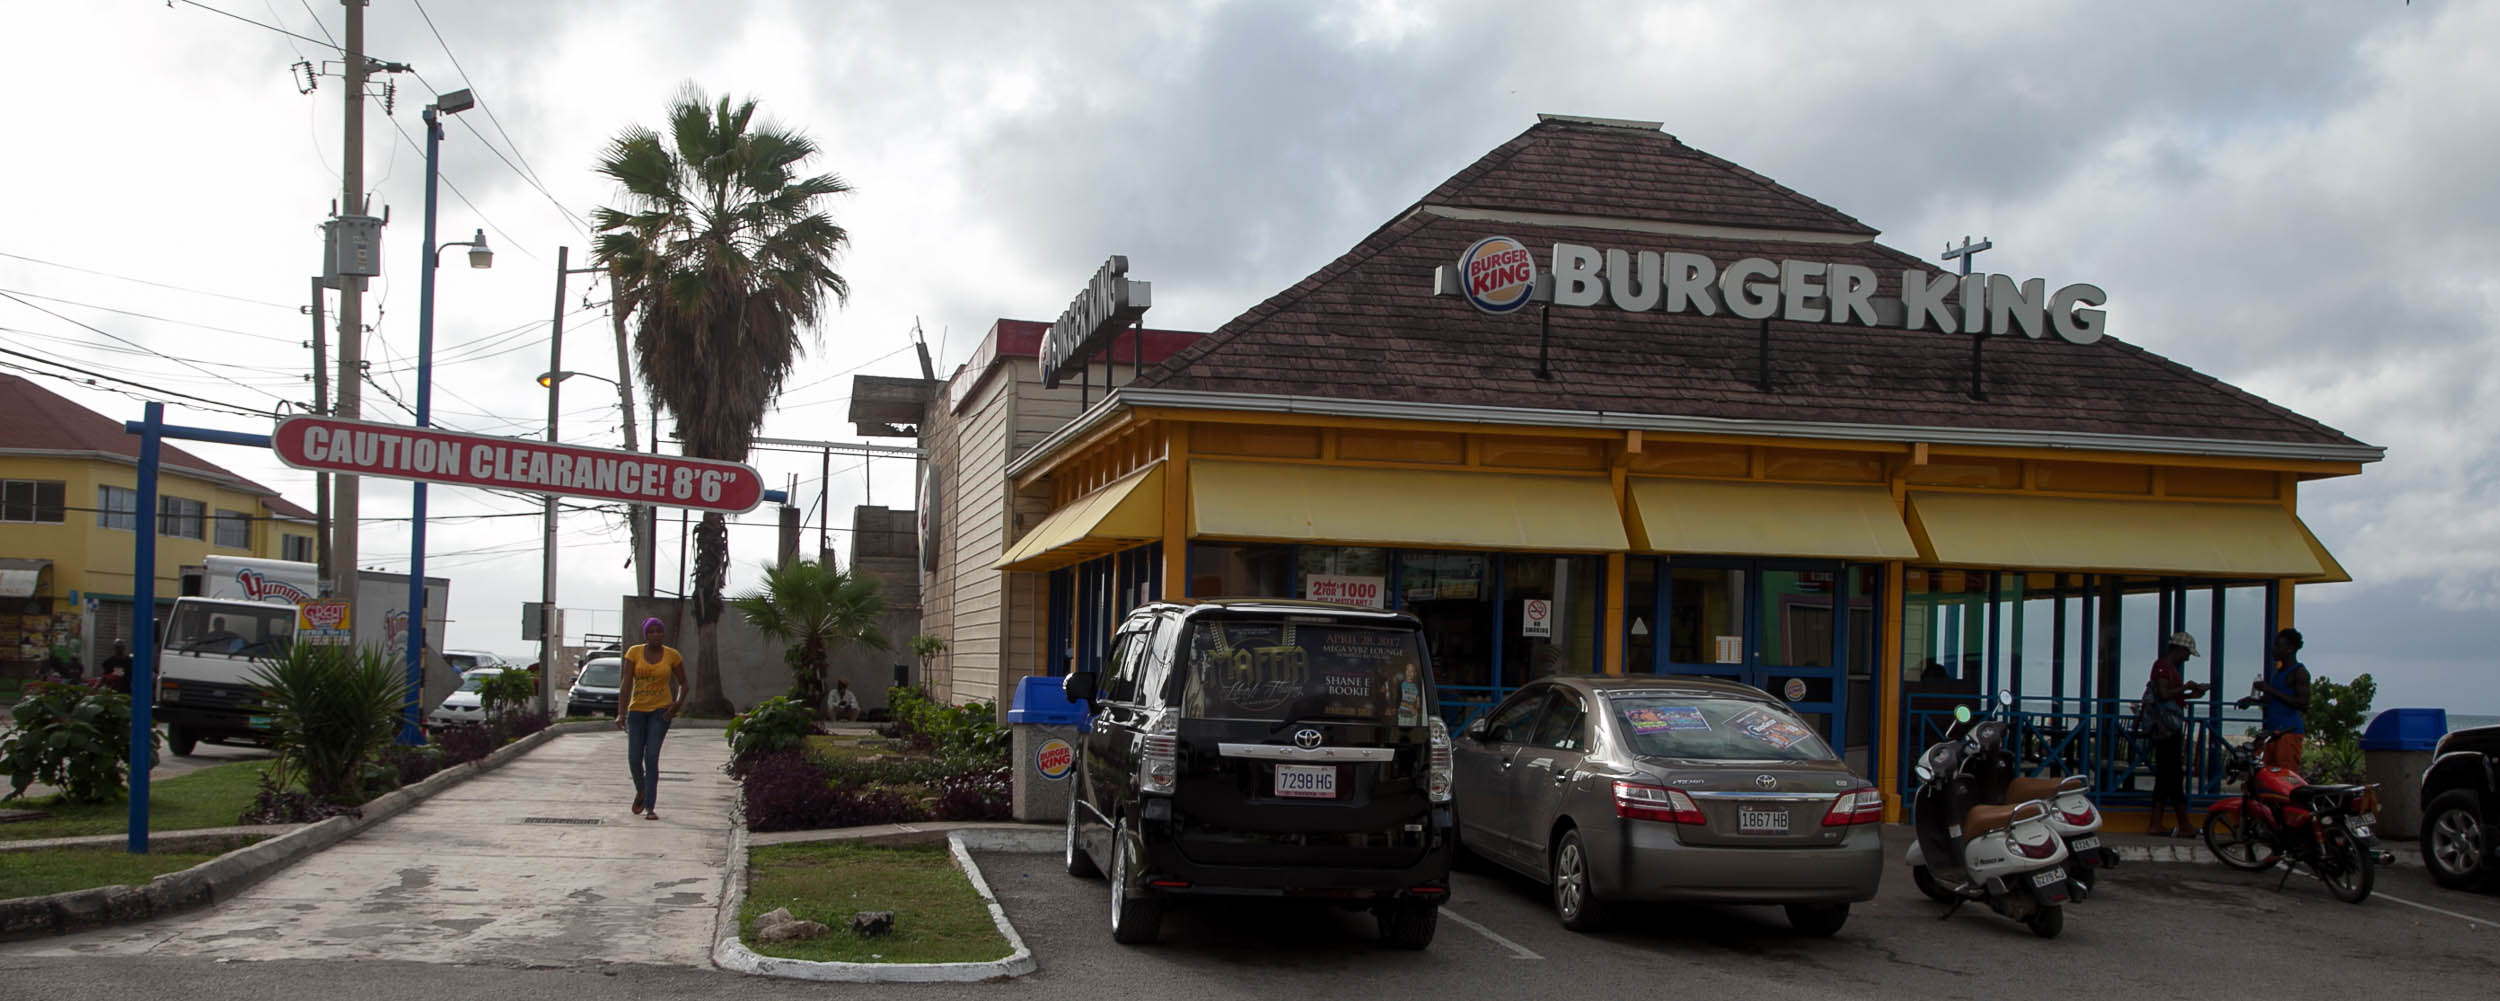 Burger King @ Negril Centre - Negril Jamaica